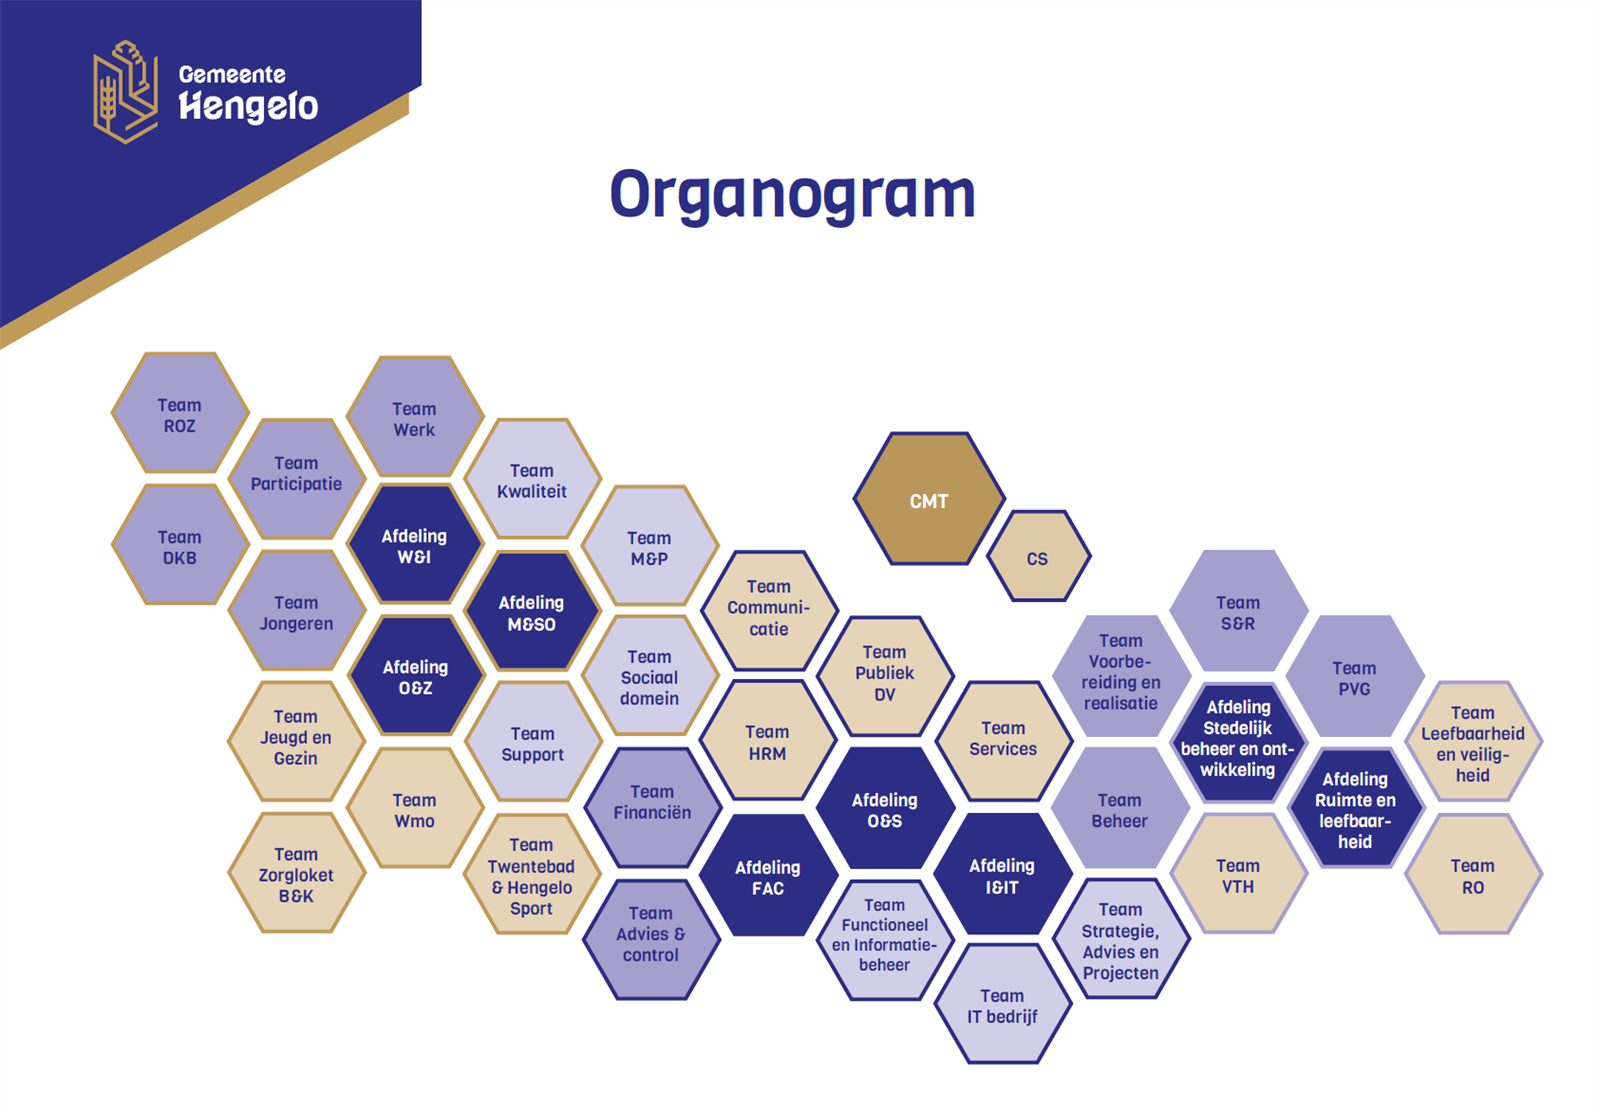 Klik op het organogram voor een vergroting.